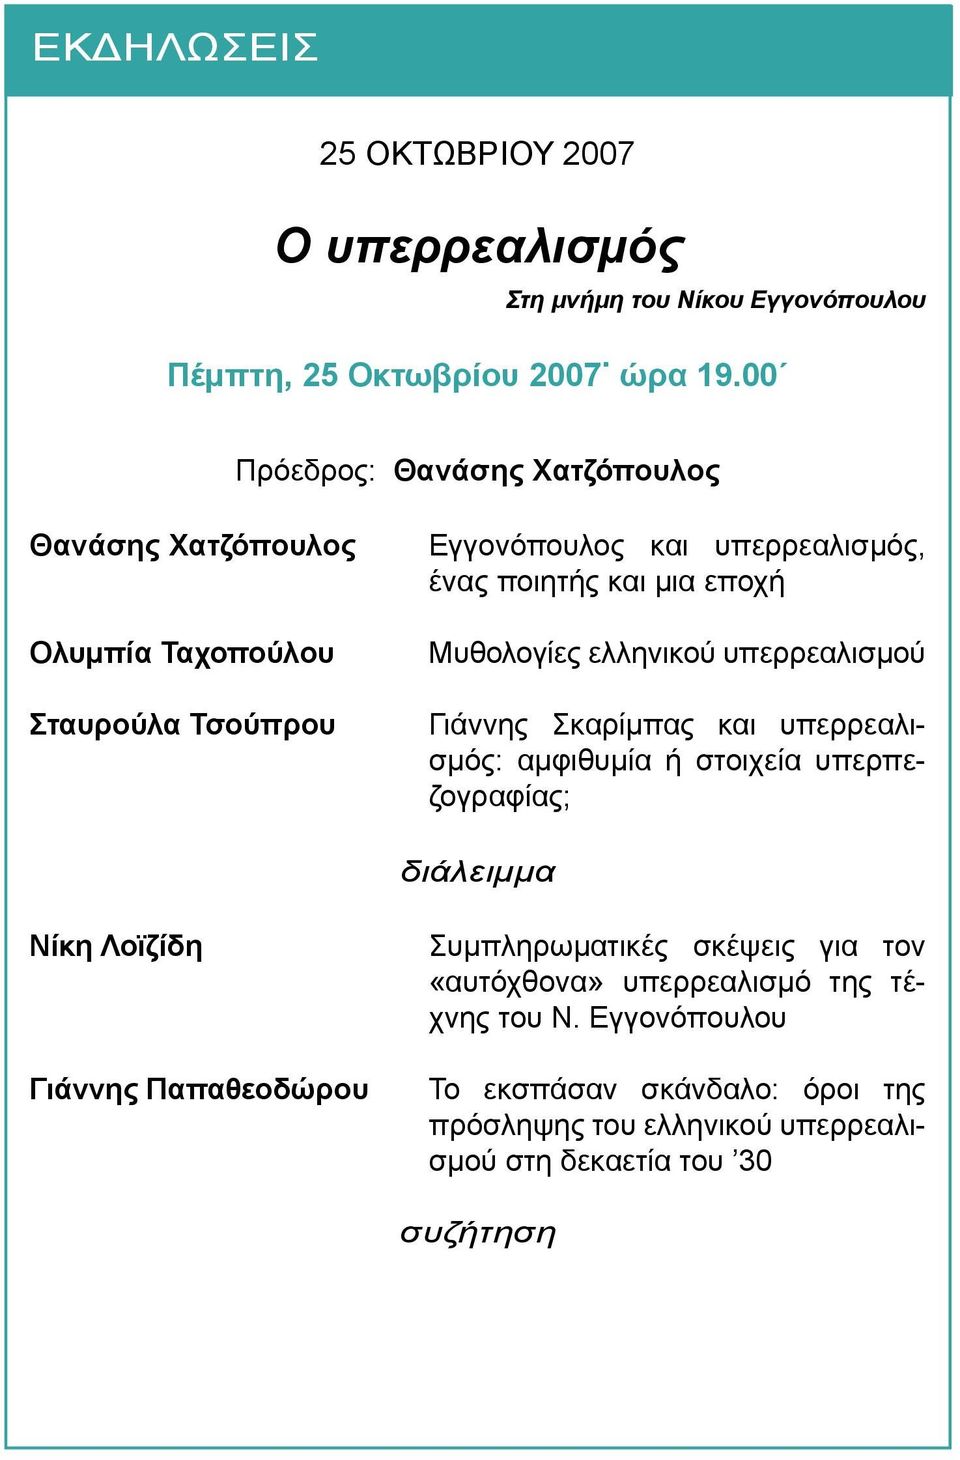 εποχή Μυθολογίες ελληνικού υπερρεαλισμού Γιάννης Σκαρίμπας και υπερρεαλισμός: αμφιθυμία ή στοιχεία υπερπεζογραφίας; διάλειμμα Νίκη Λοϊζίδη